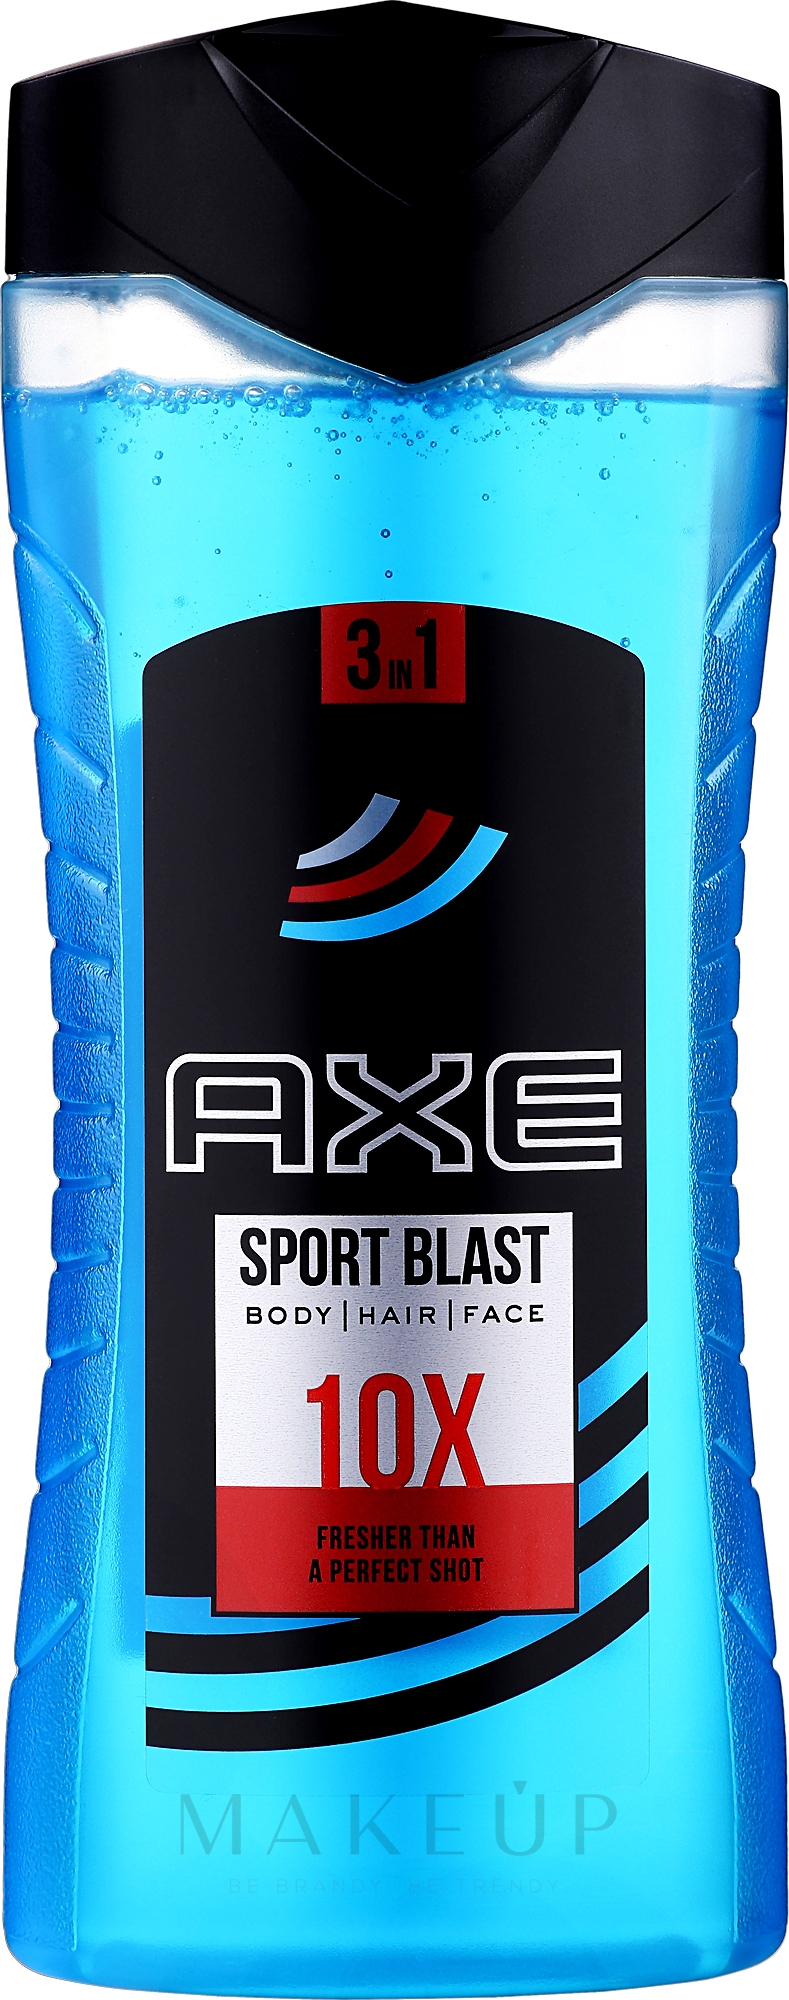 3in1 Duschgel "Sport Blast" - Axe Re-Energise After Sport Body And Hair Shower Gel Sport Blast — Foto 400 ml